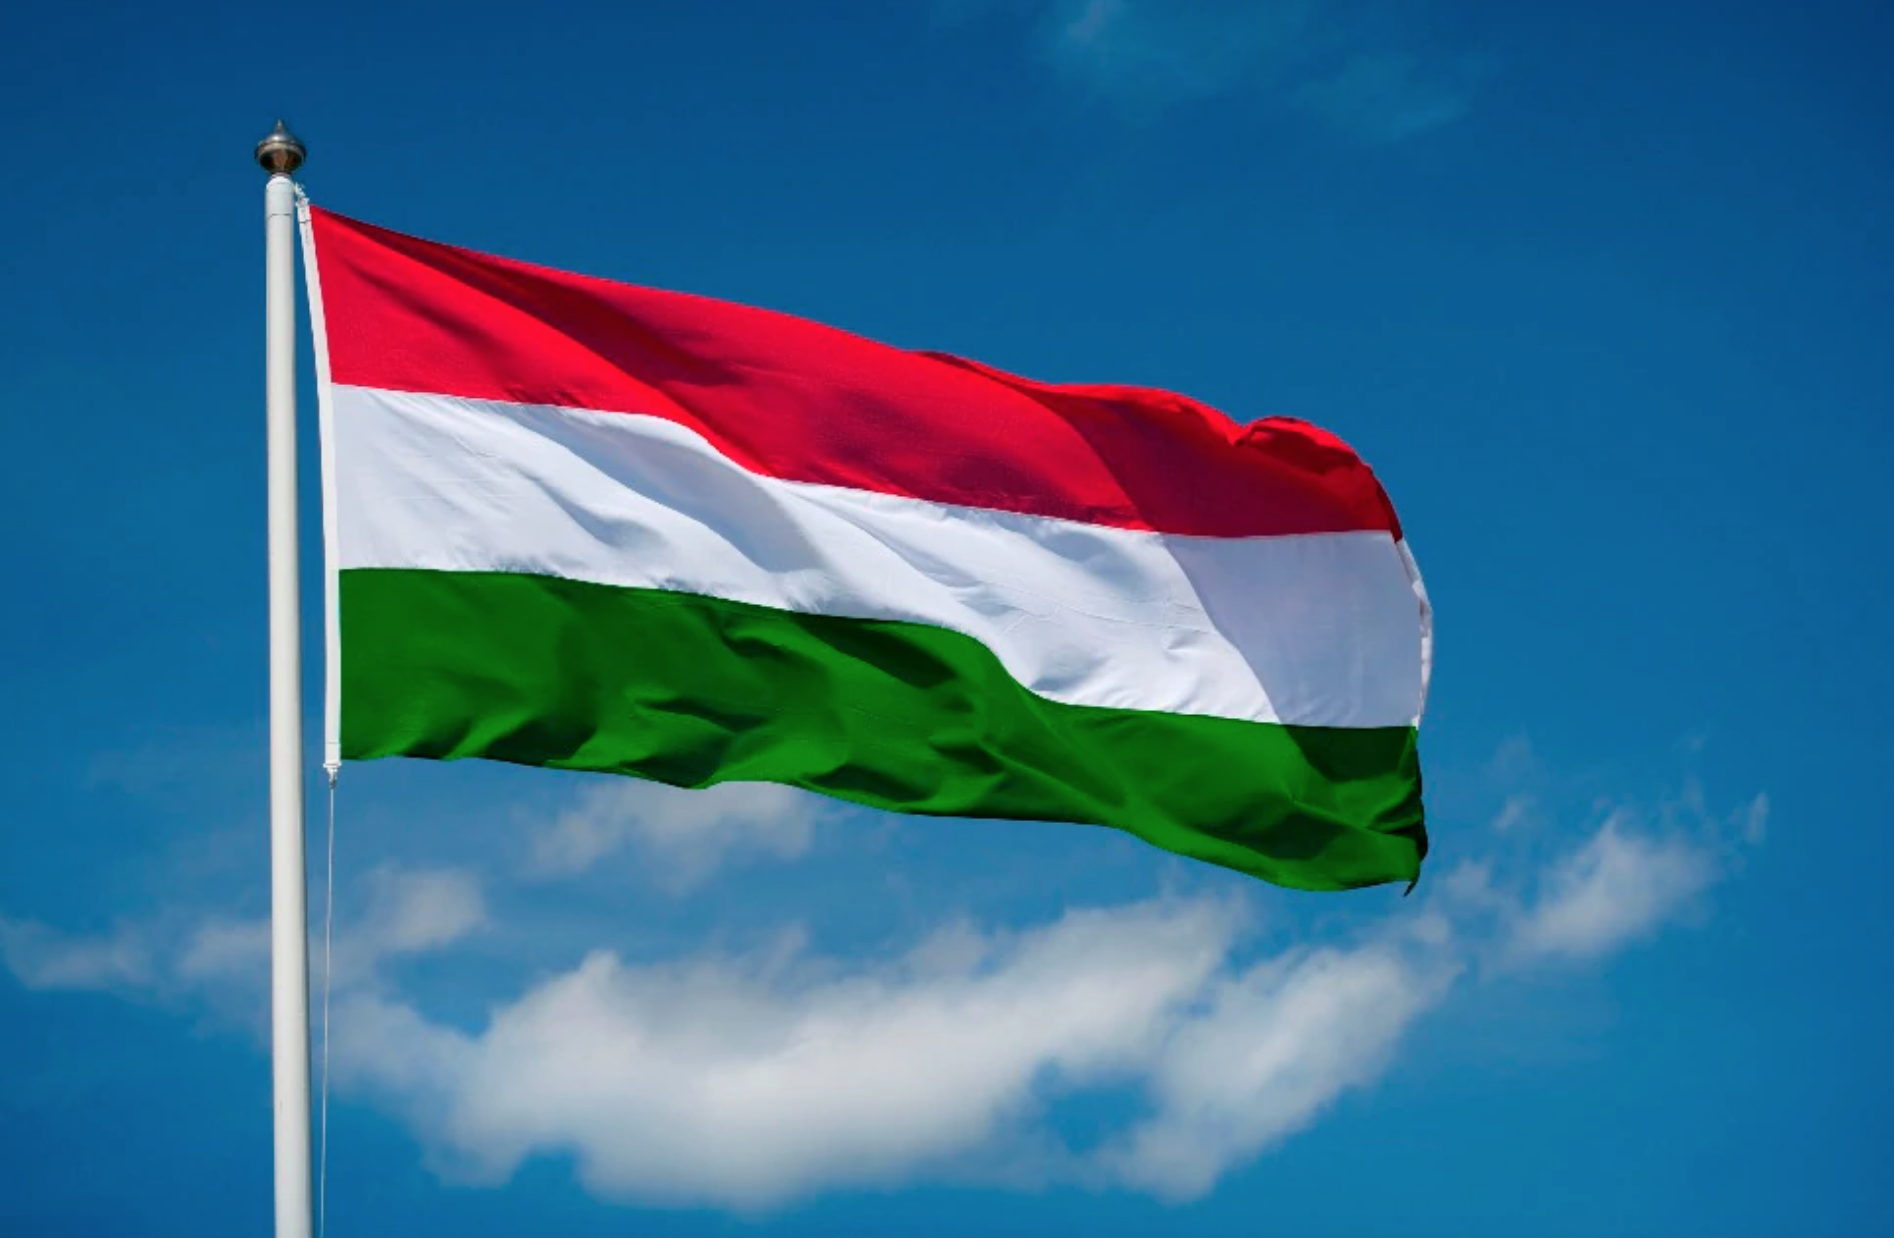 Ungheria, il governo propone un emendamento costituzionale che interpreta i ruoli di genere in chiave cristiana 1